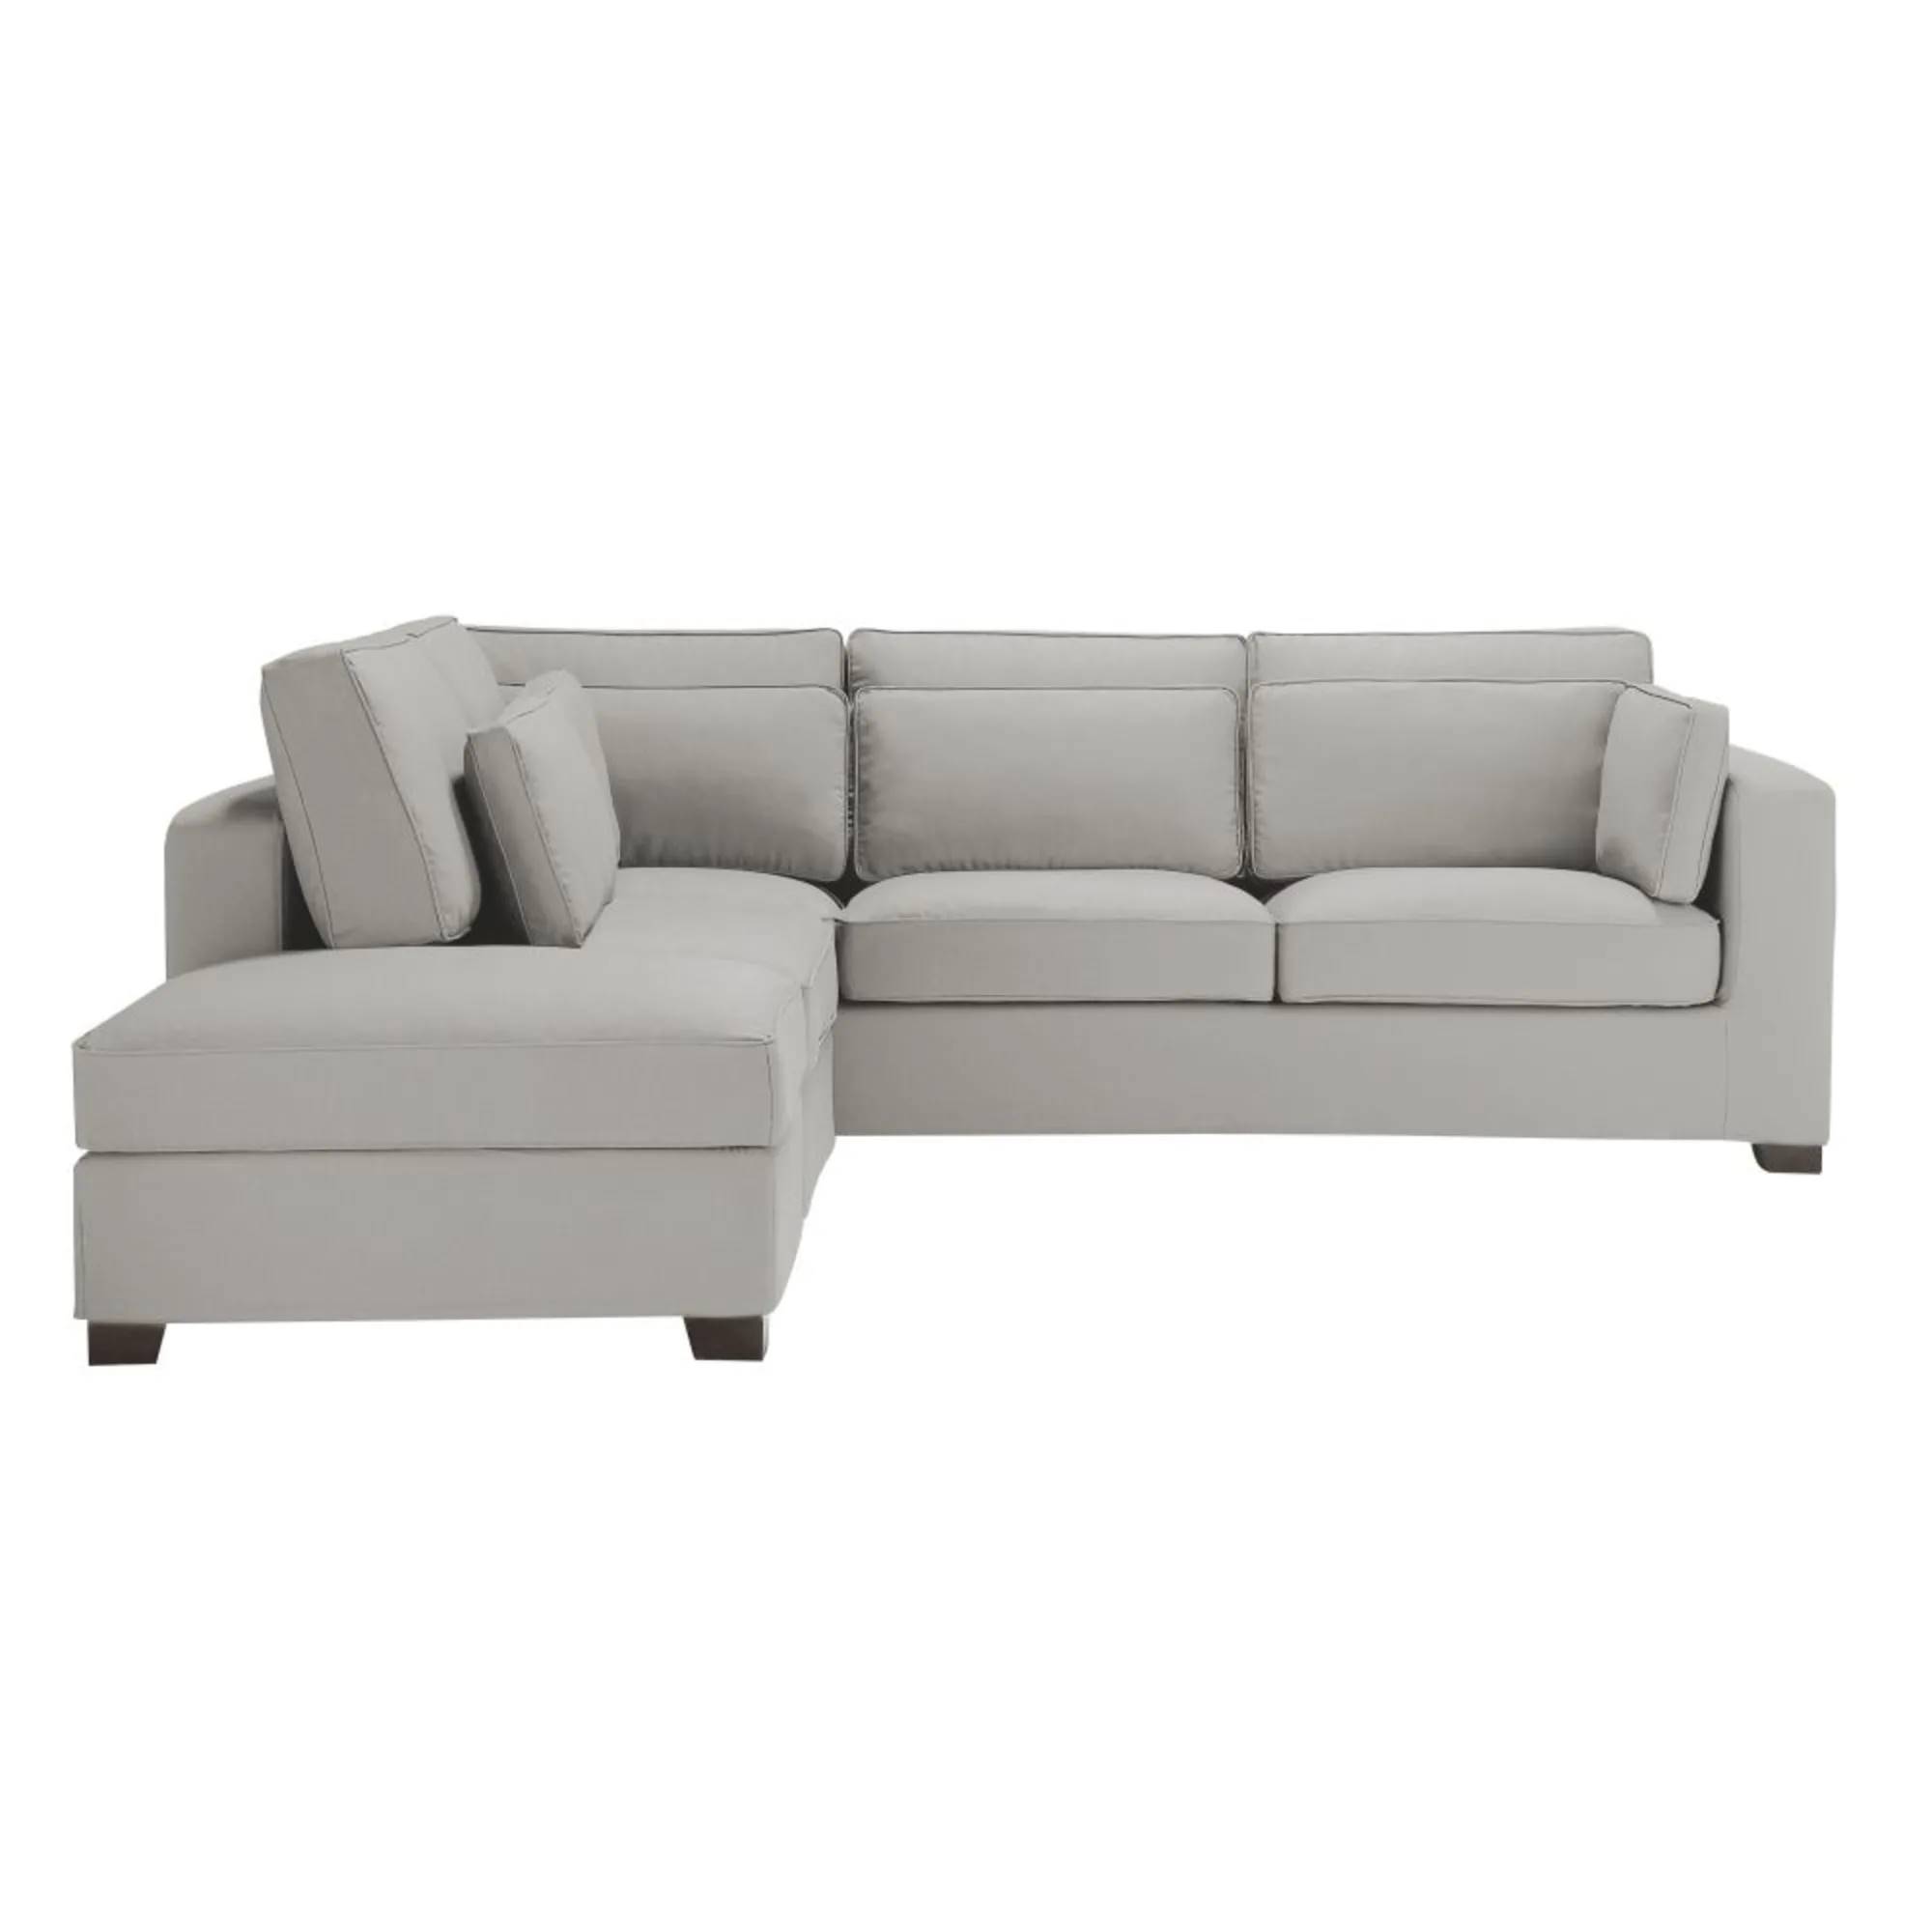 sofa-esquinero-de-5-plazas-de-algodon-gris-claro-1000-2-34-203271_1